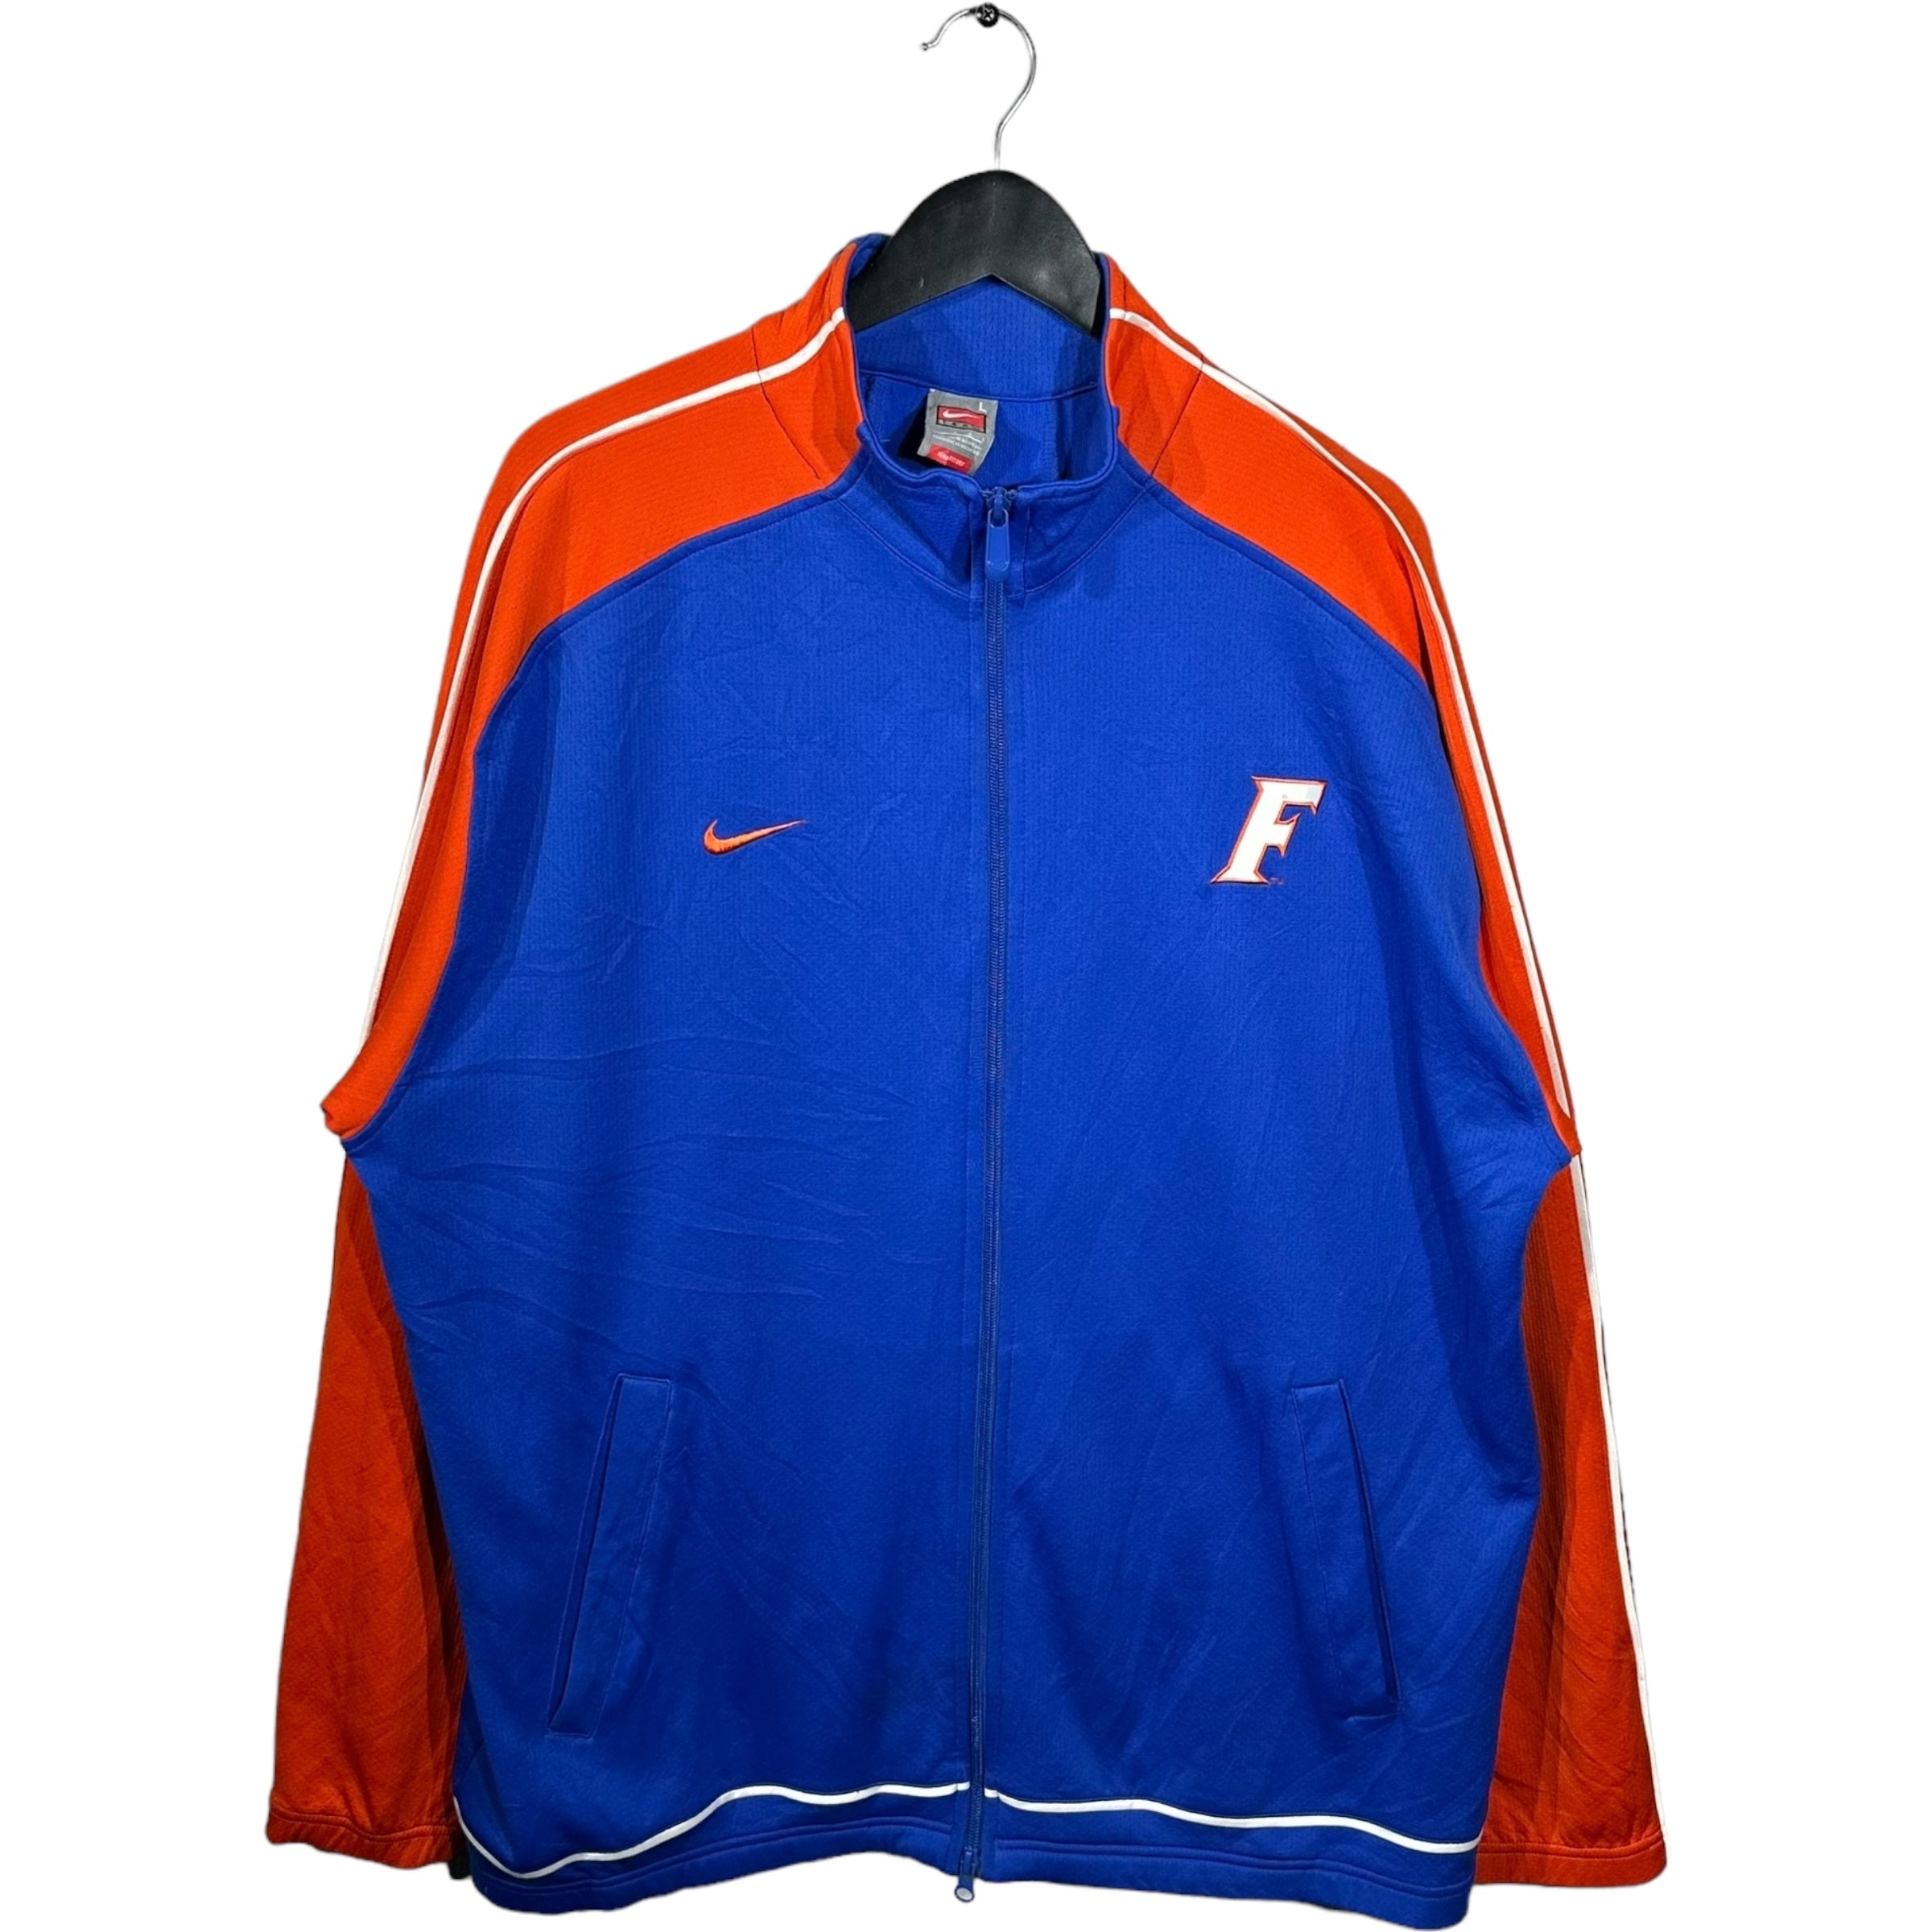 Vintage Nike Florida University Jacket